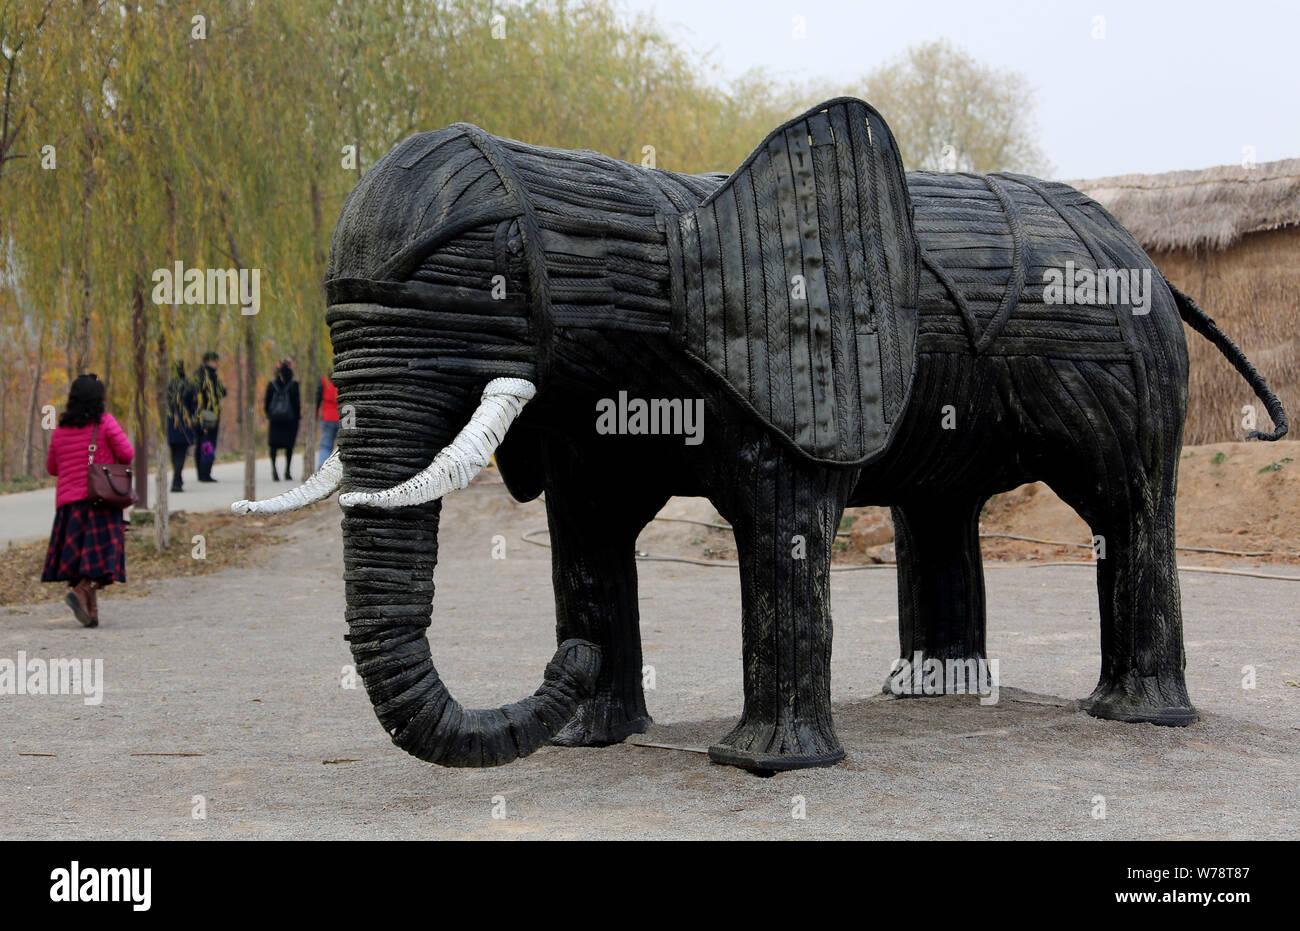 Un éléphant est en forme de sculpture des pneumatiques sur l'affichage à un parc de sculptures des pneus à Zaozhuang City, Shandong province de Chine orientale, le 19 novembre 2017. Touris Banque D'Images